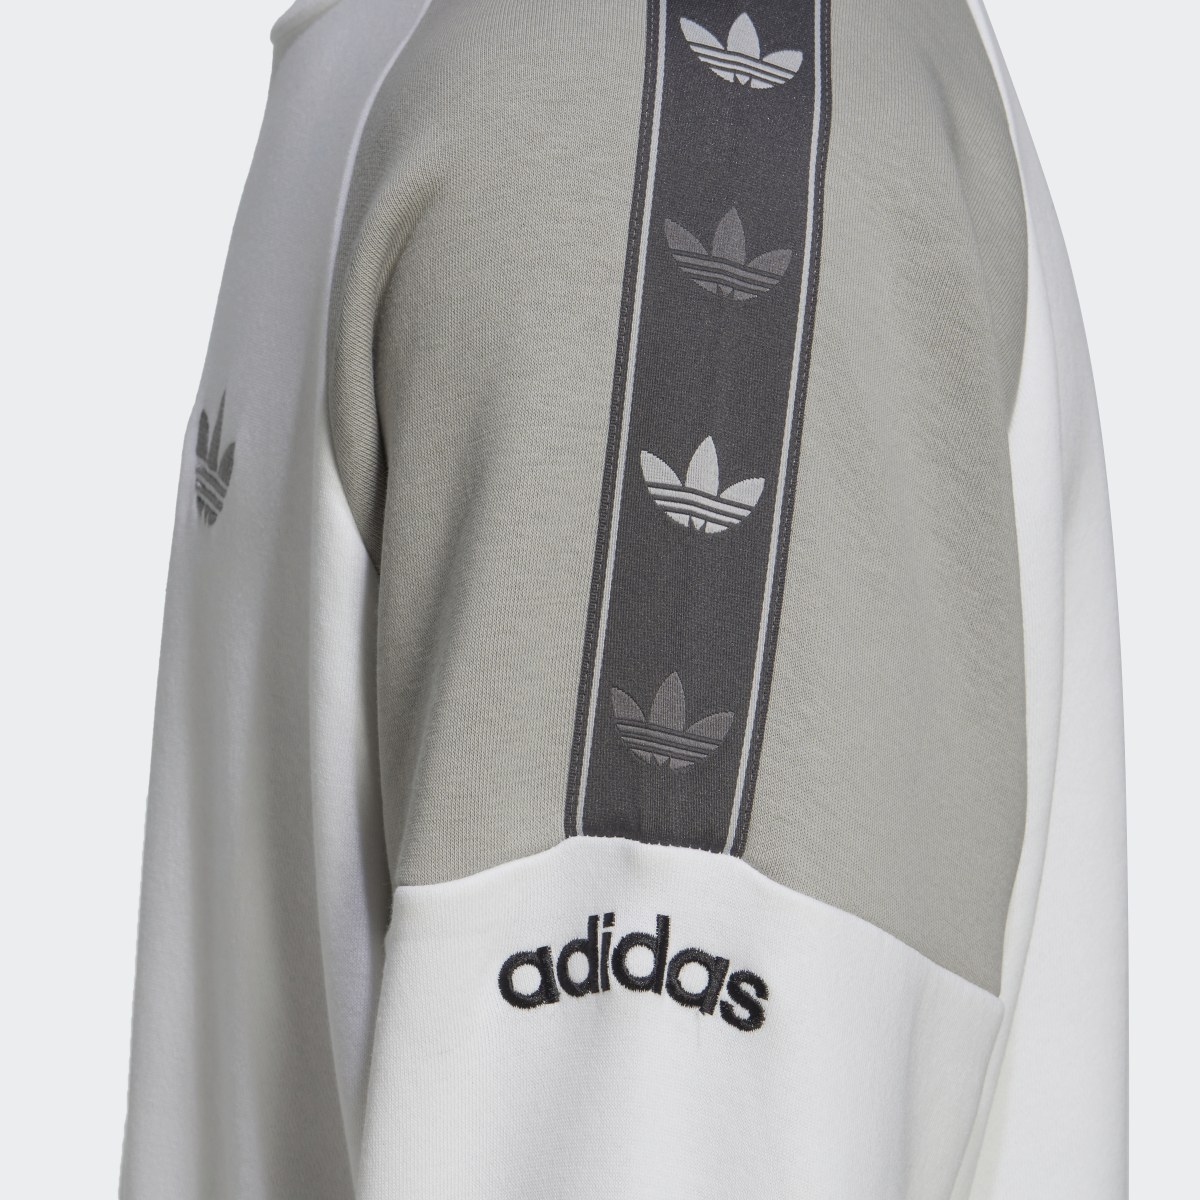 Adidas Tape Fleece Crew Sweatshirt. 7